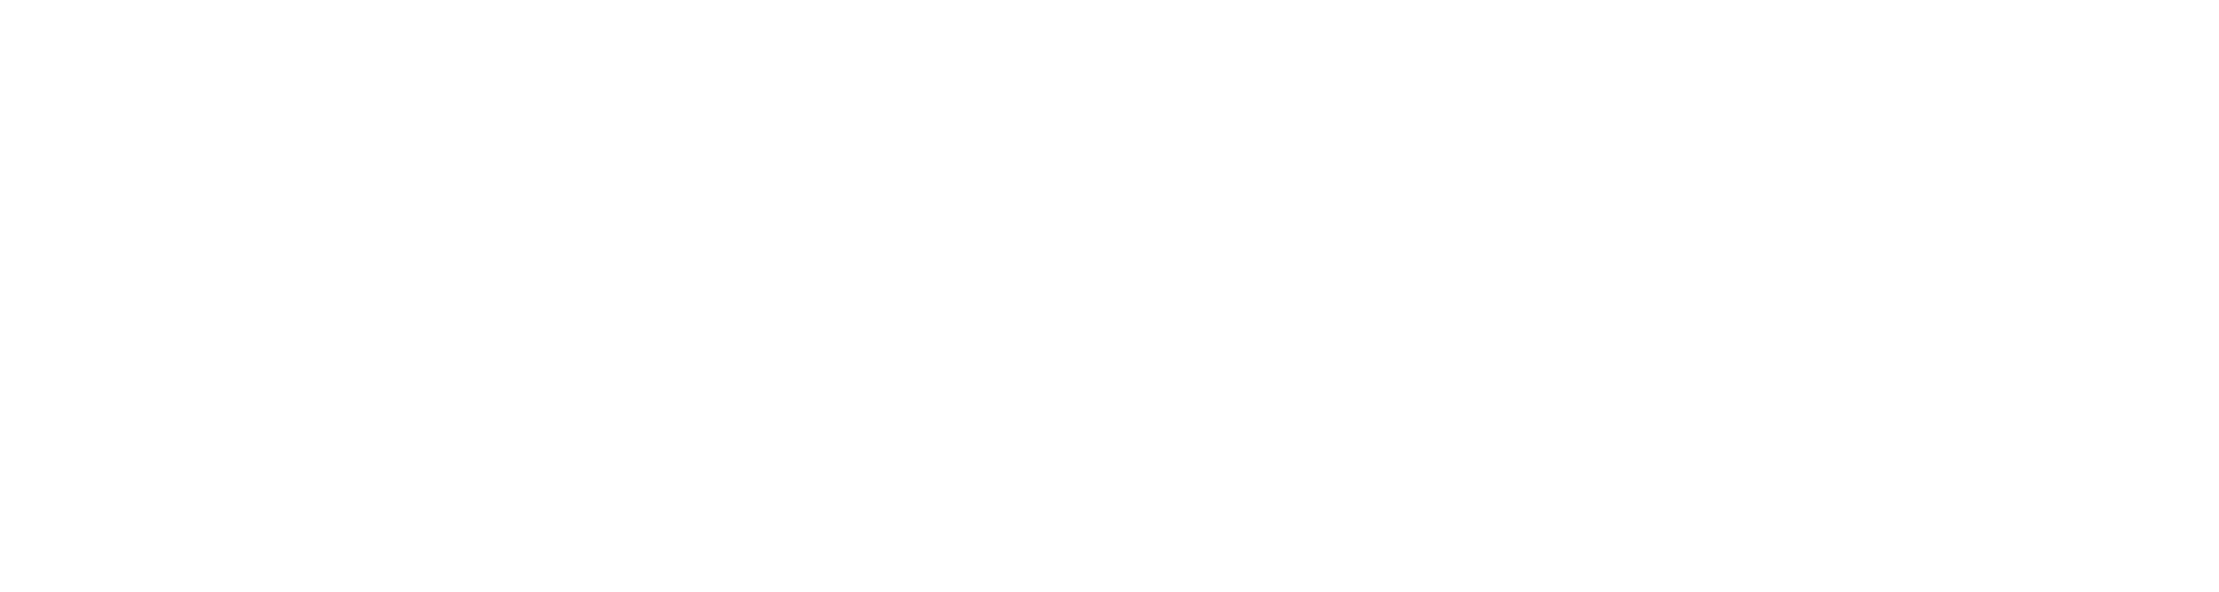 Shilat Zahnarzt Logo Weiss